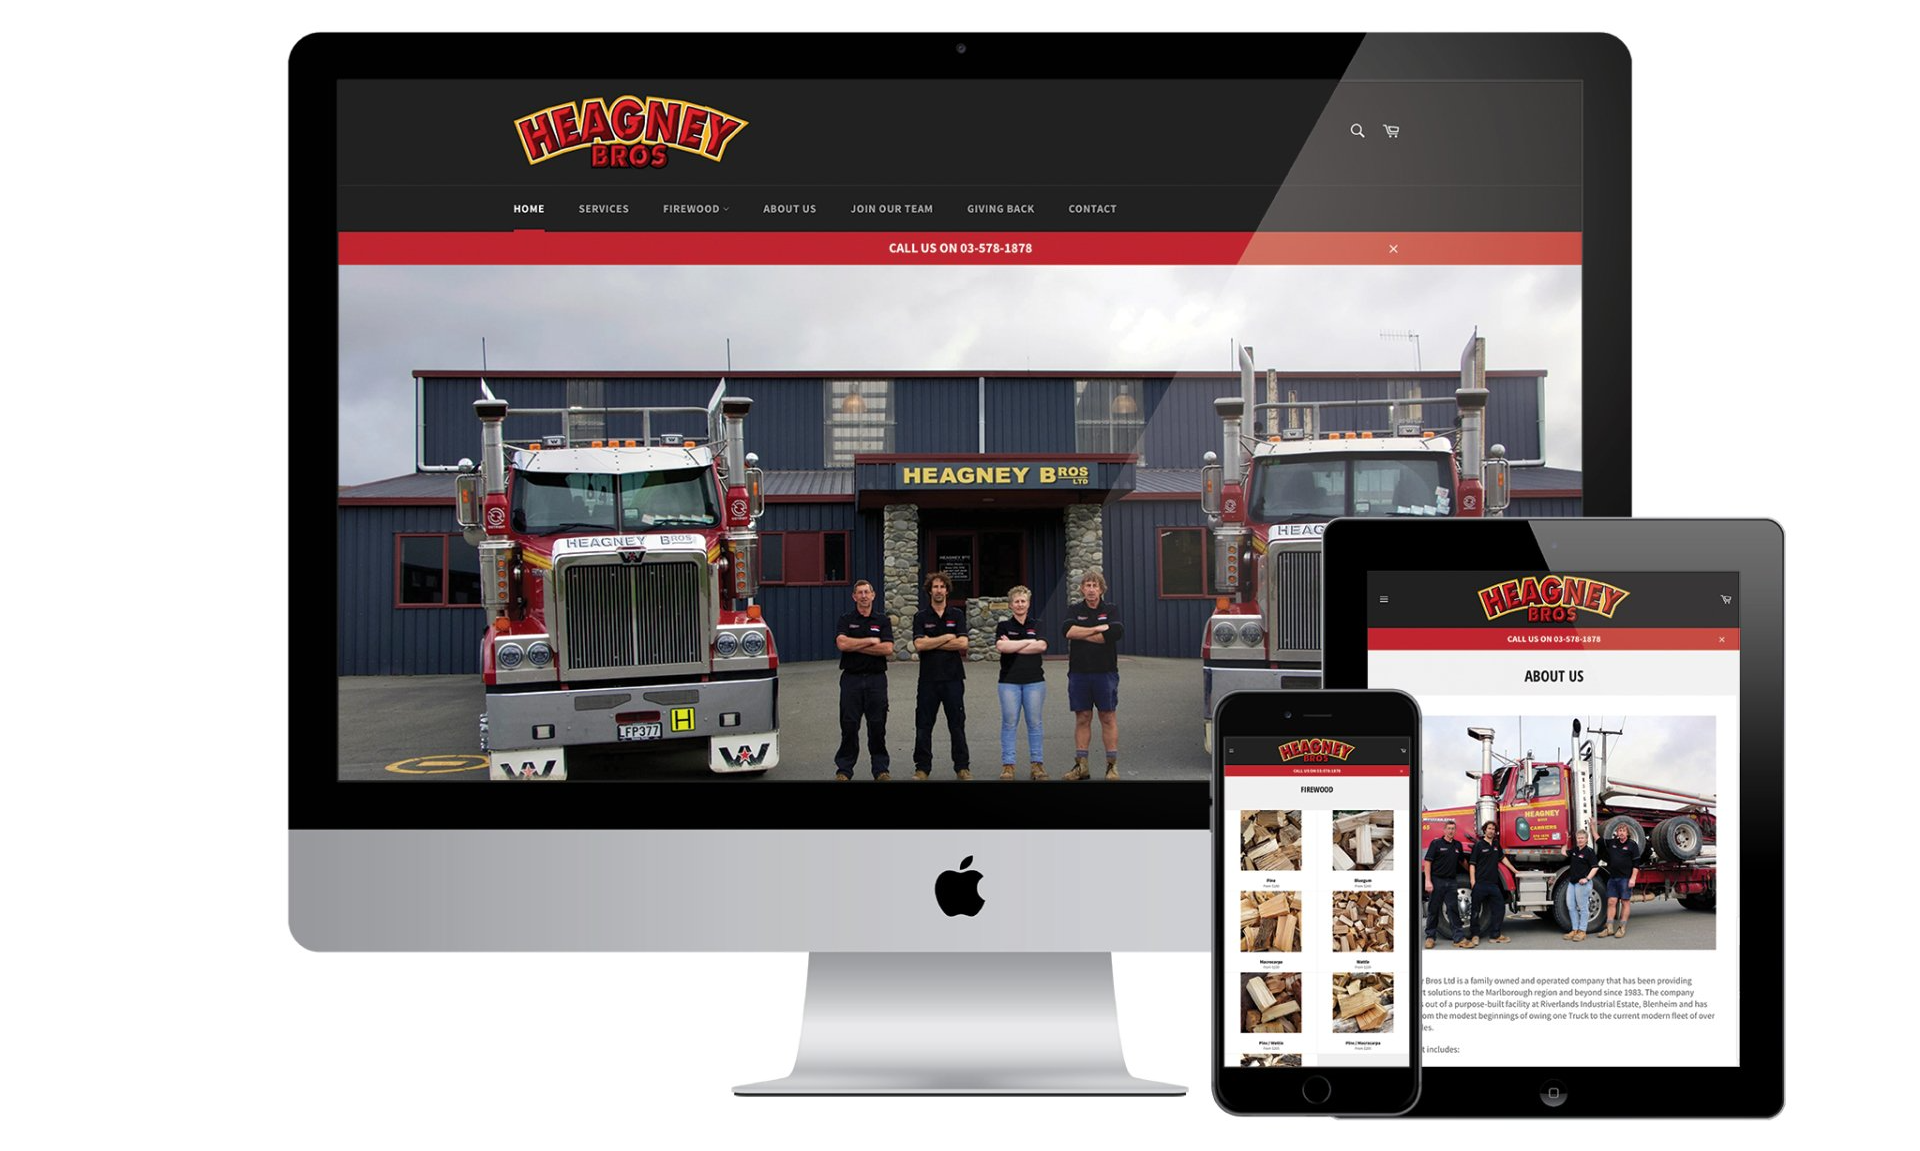 Heagney Bros website designed by Vanilla Hayes creative graphic design  studio in Blenheim, Marlborough, New Zealand